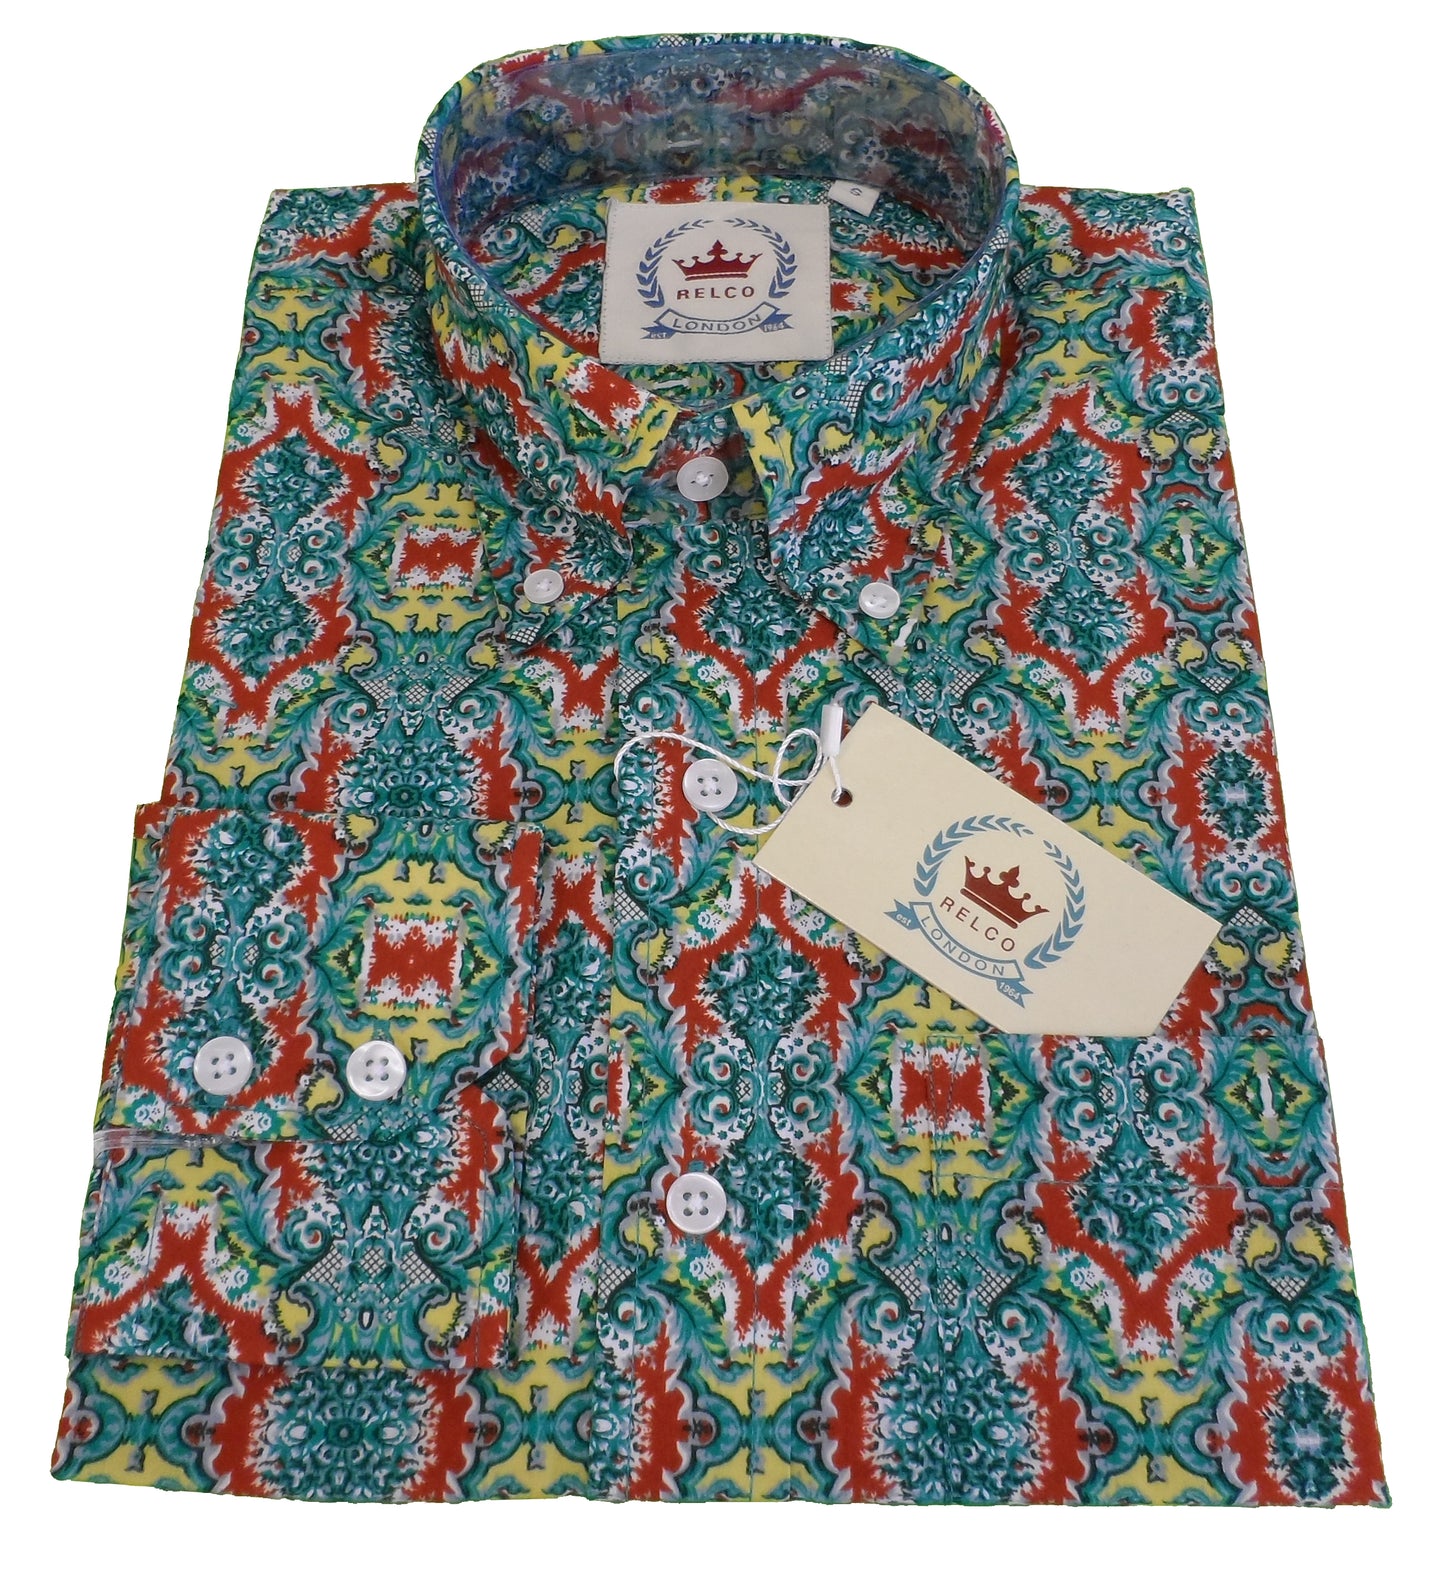 Relco grüne Button-Down-Hemden mit Retro-Psychedelic-Muster für Herren